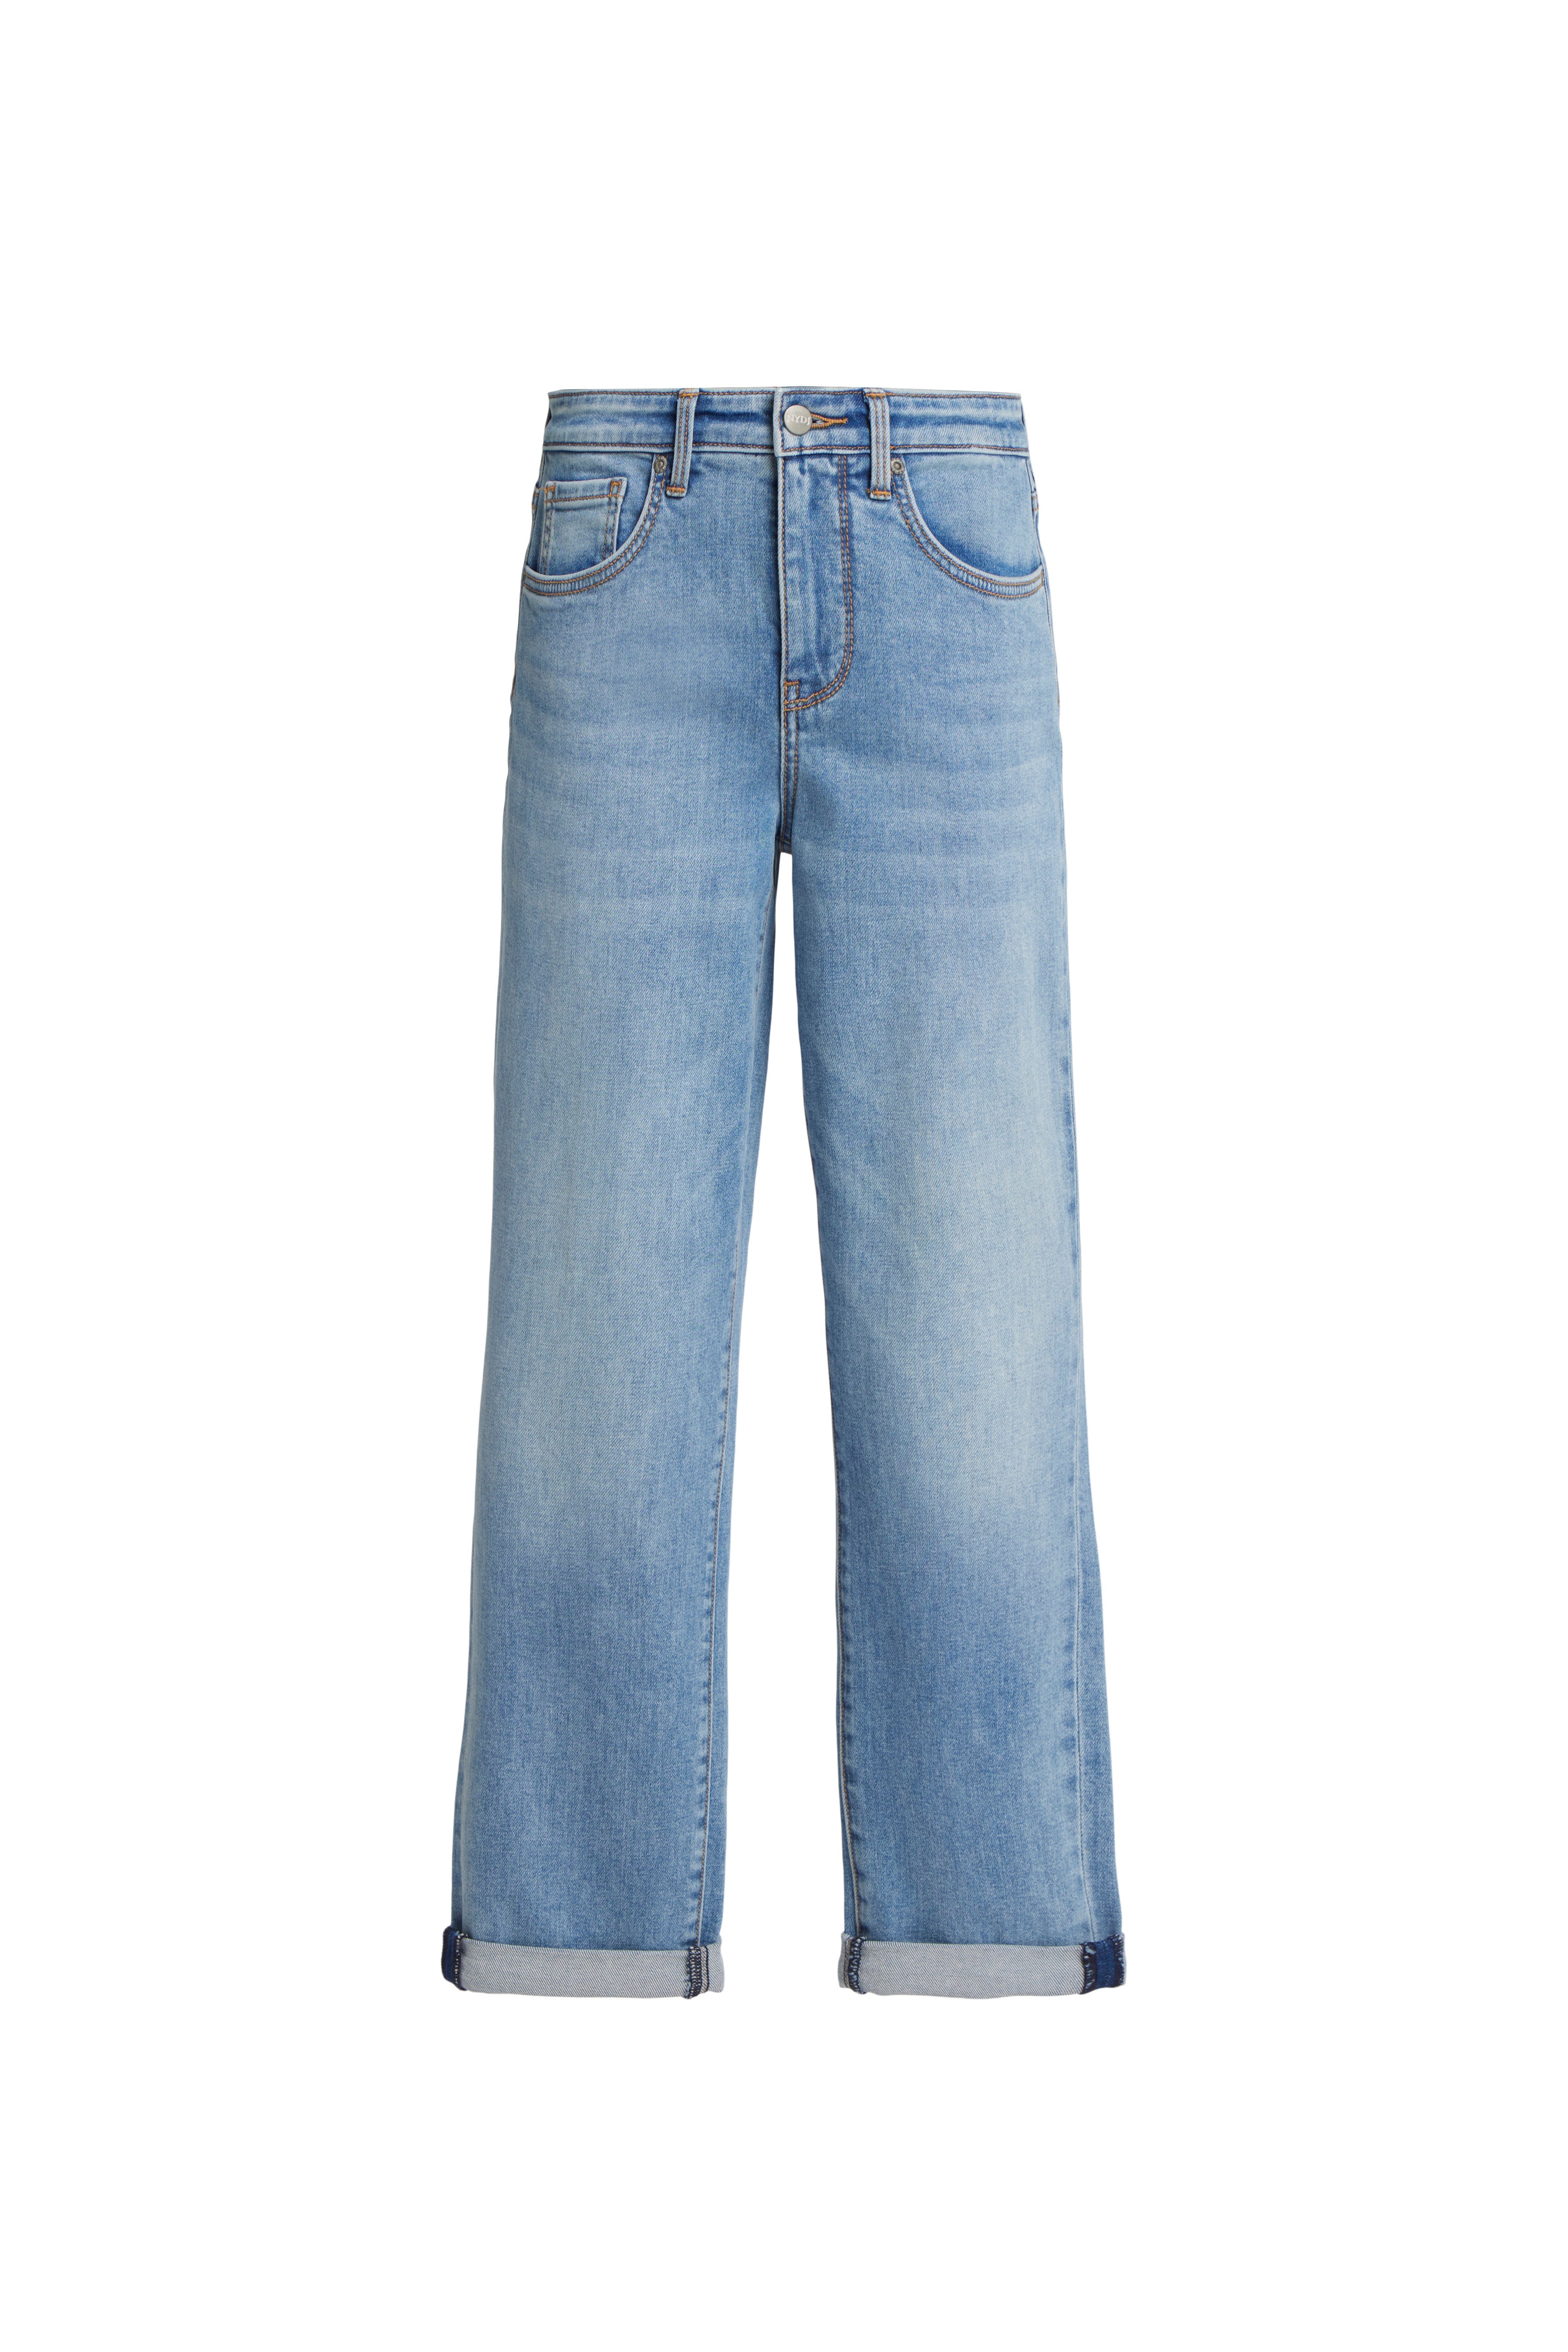 Kenzo Blue Cotton Denim Jeans for Men Online India at Darveys.com